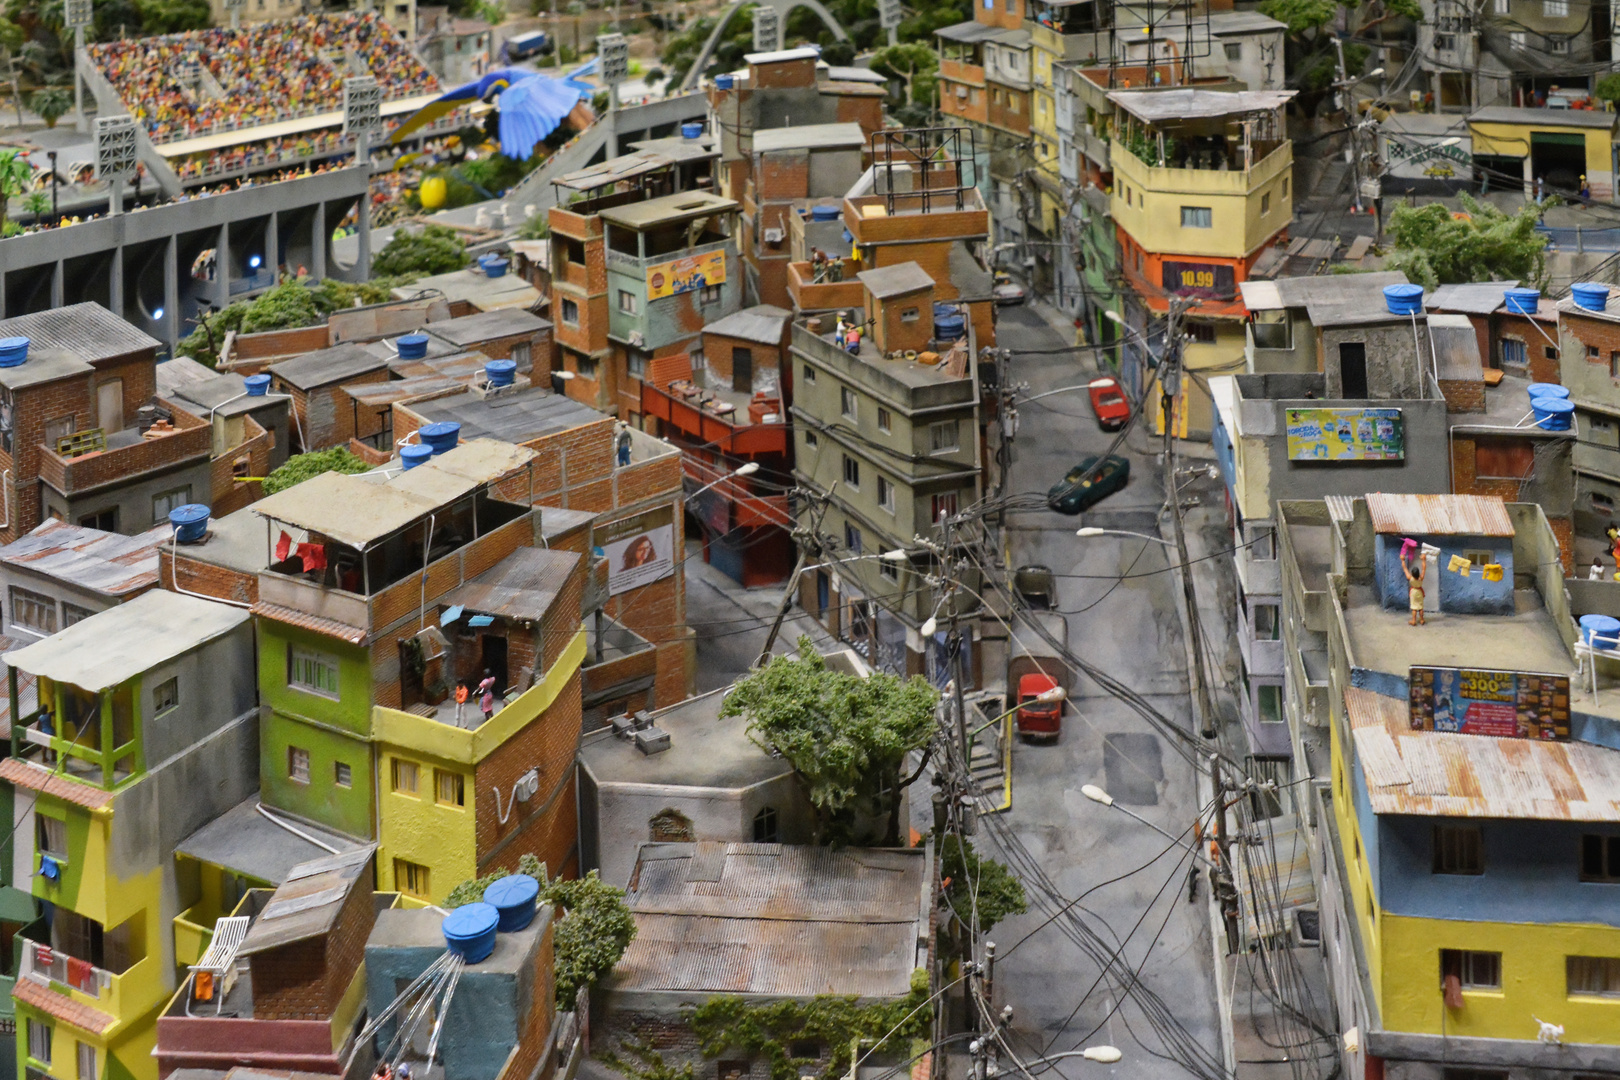 Rio, Favela